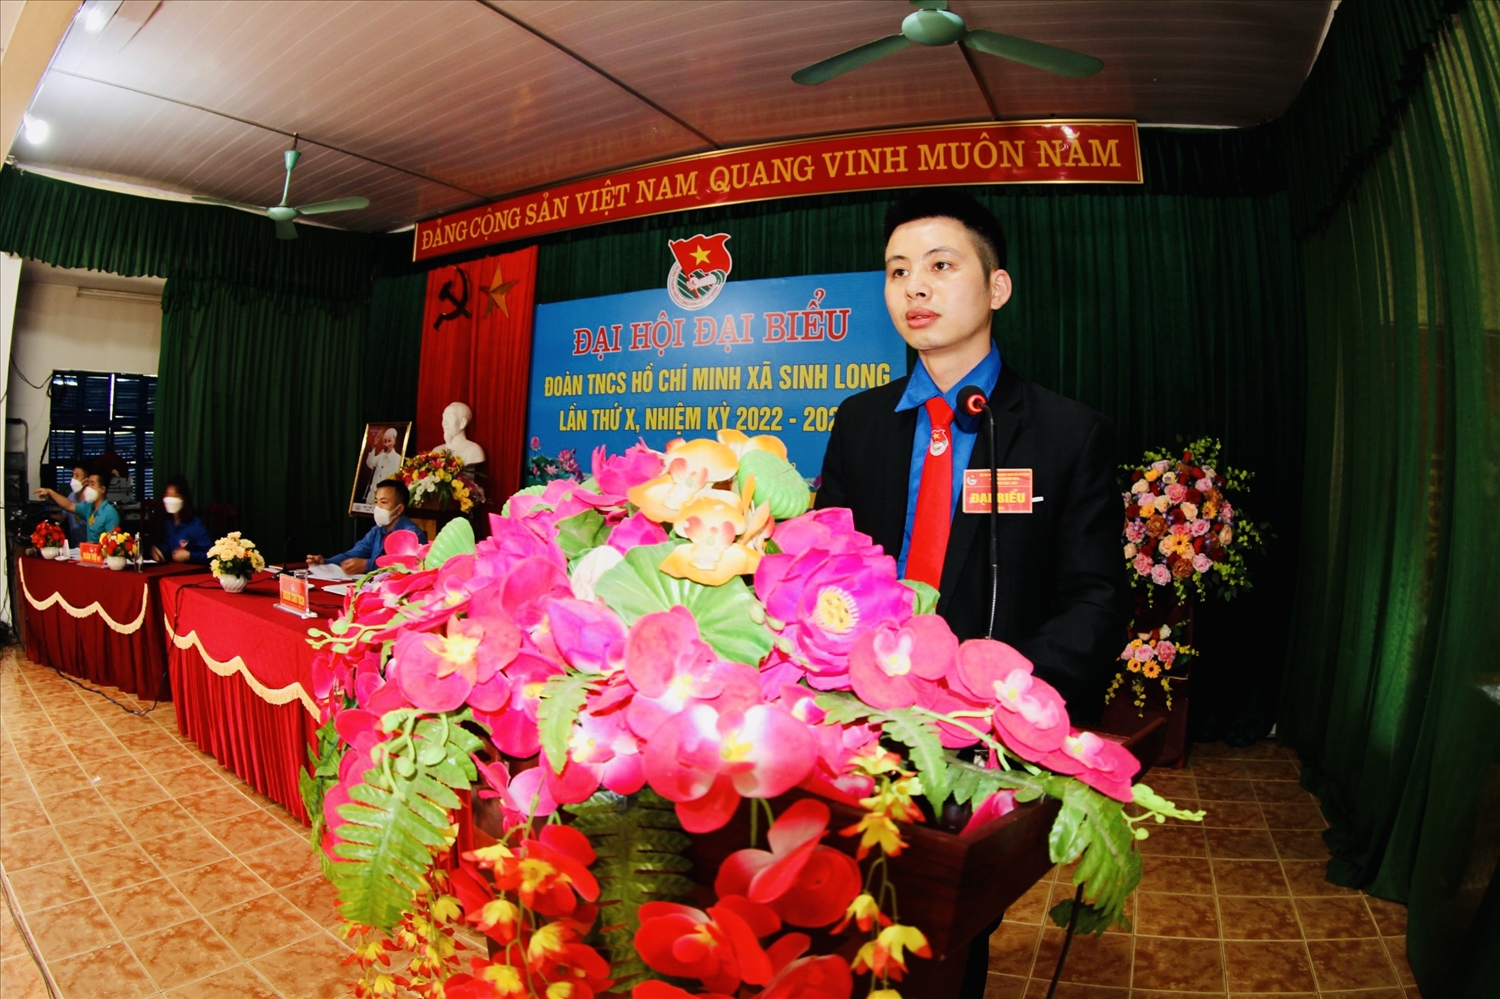 Chân dung cán bộ Đoàn tiêu biểu ở Sinh Long, huyện Na Hang, tỉnh Tuyên Quang